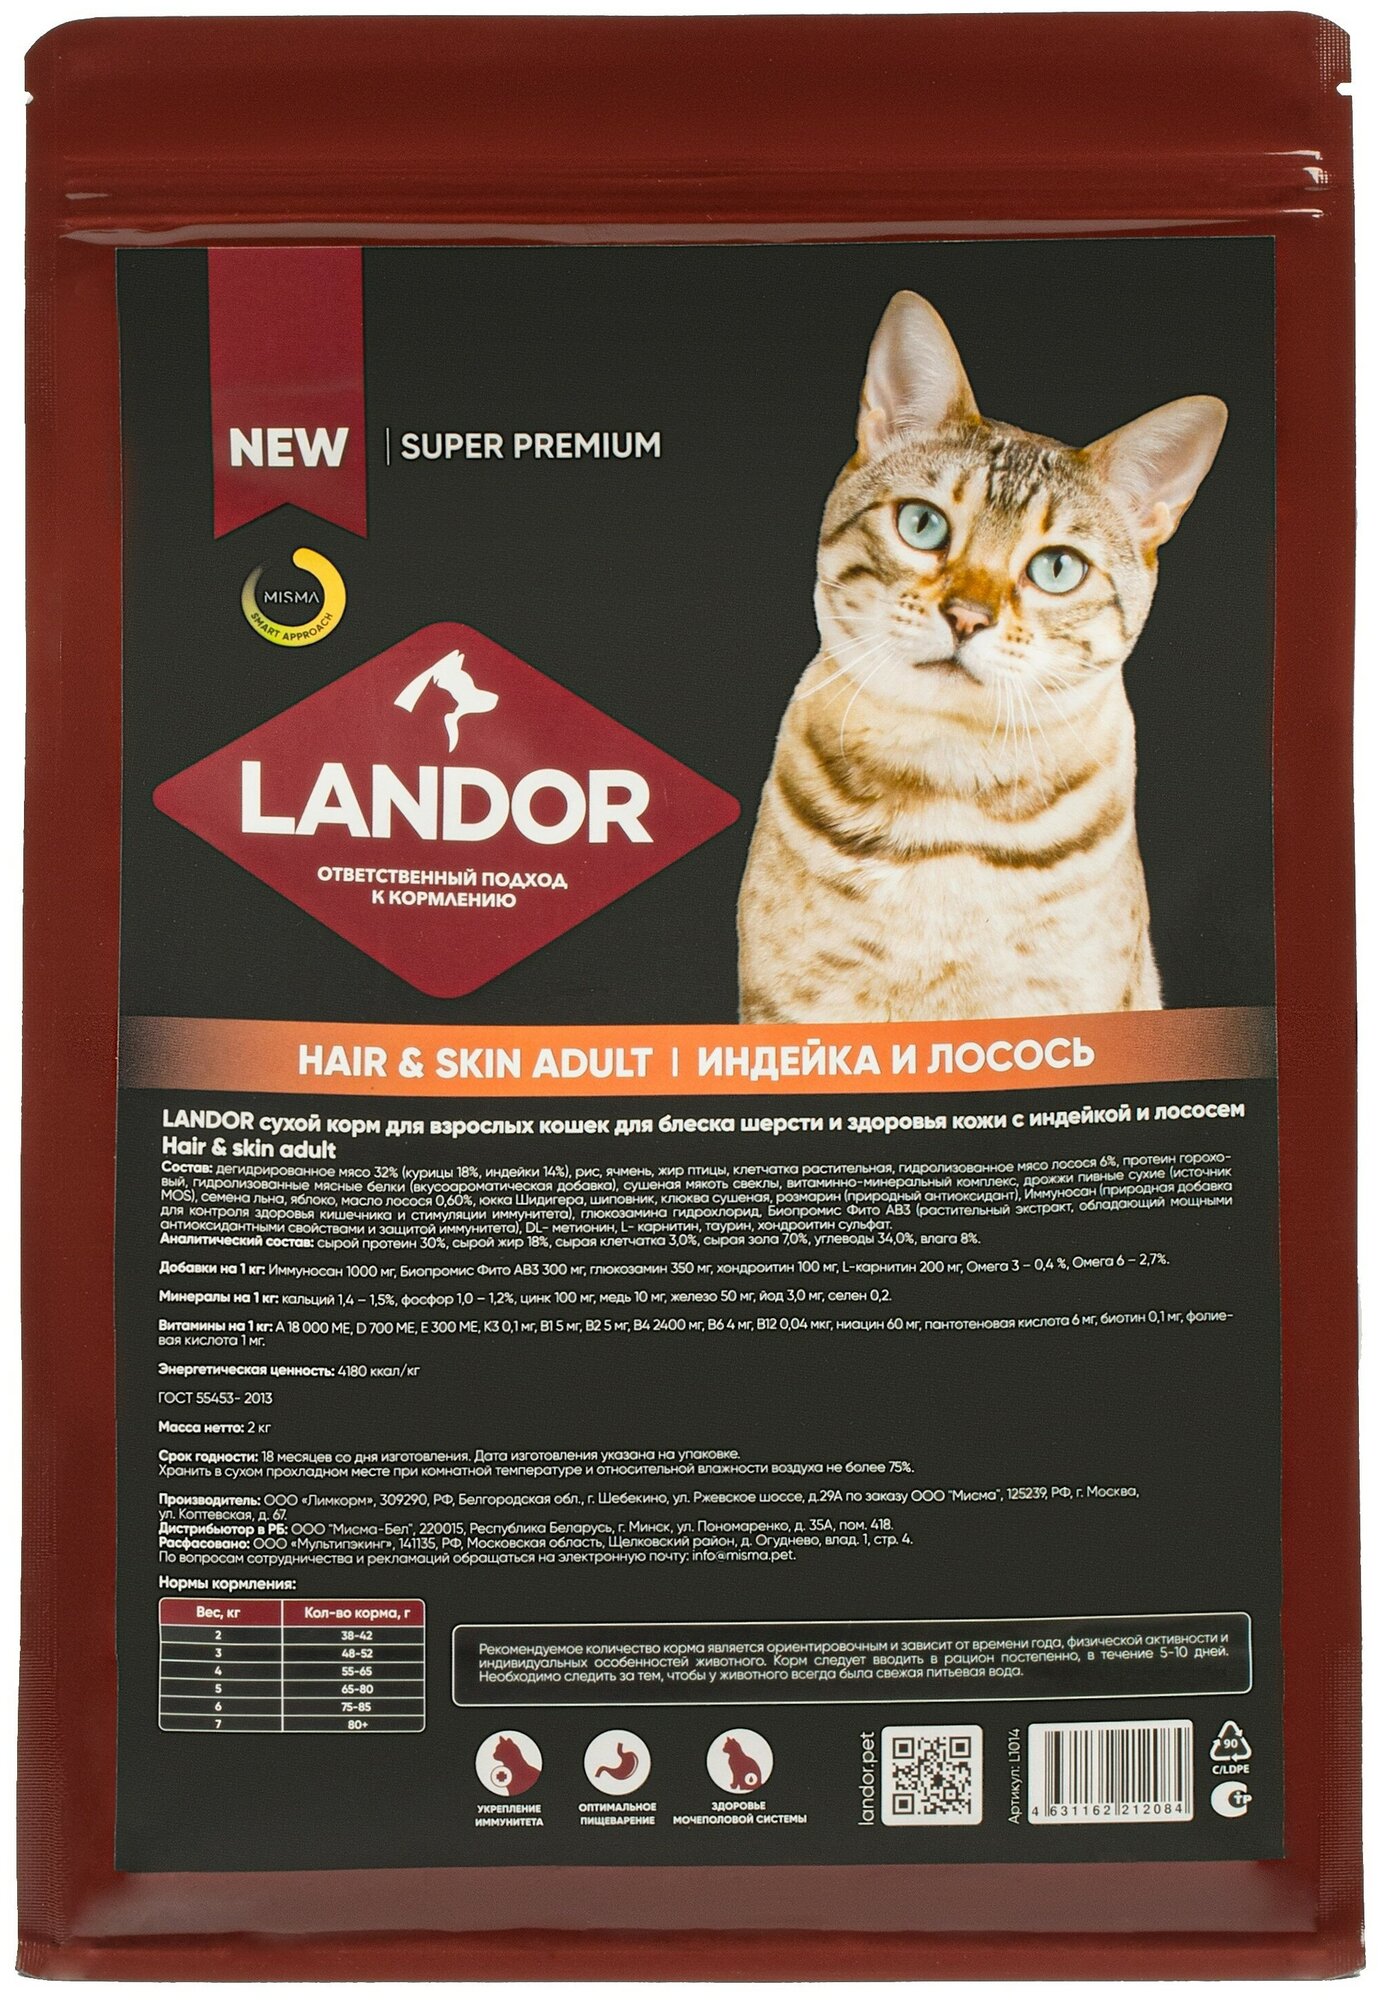 Landor Hair & Skin Cat сухой корм для взрослых кошек для блеска шерсти и здоровья кожи Индейка и лосось, 2 кг.